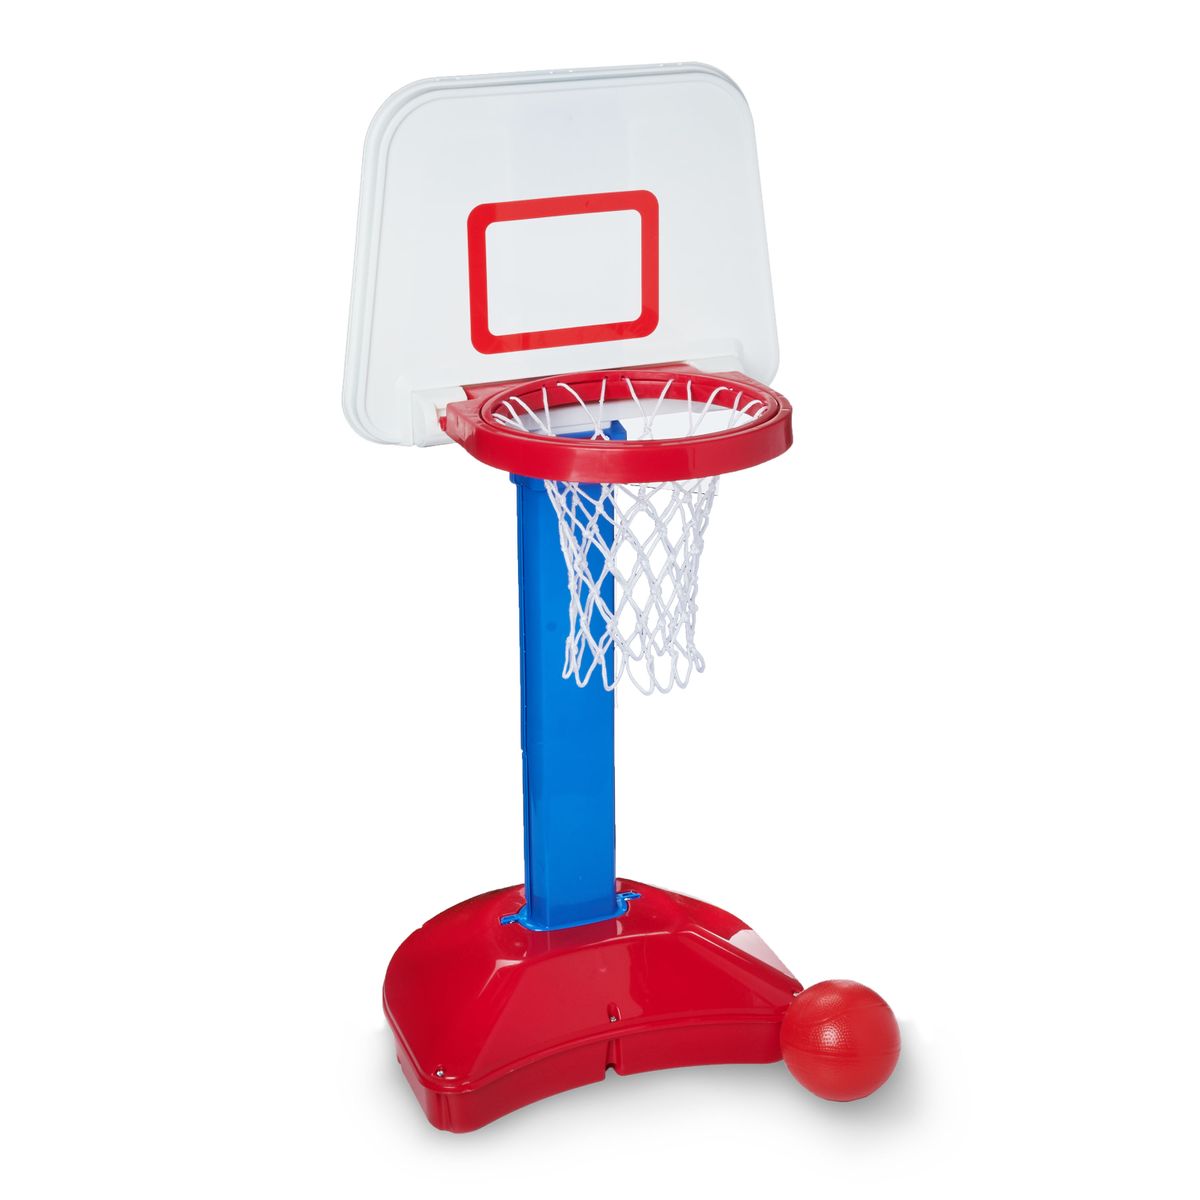 [RDY] [送料無料] Play Day Jump 'n Slam バスケットボールセット [楽天海外通販] | Play Day Jump 'n Slam Basketball Set